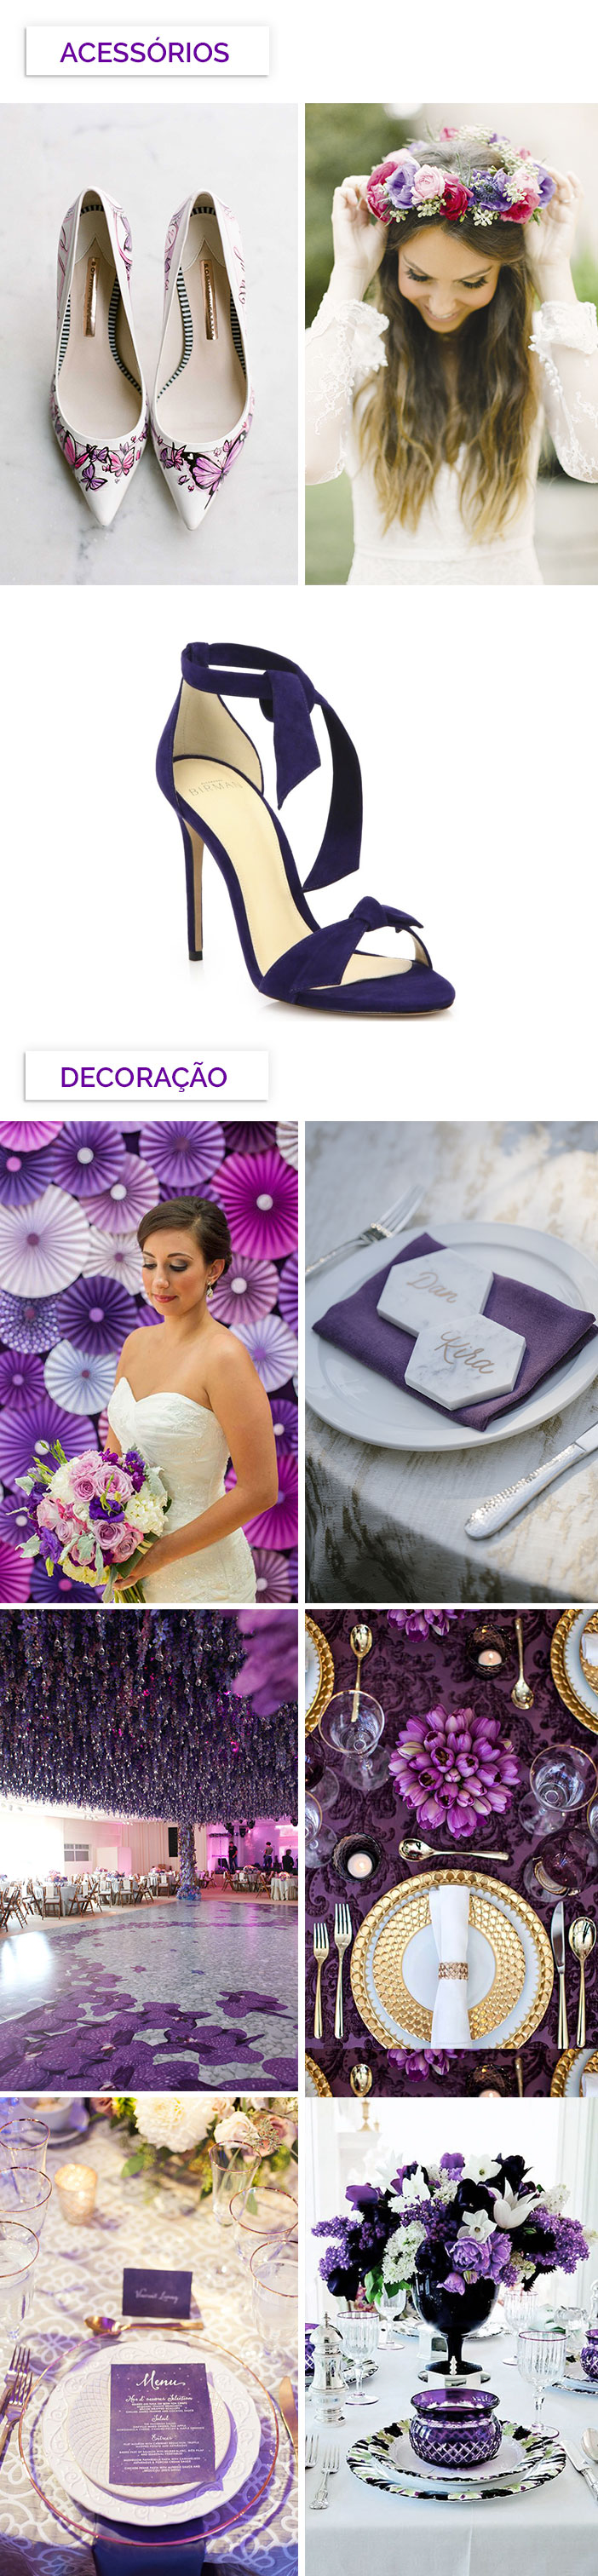 Como inserir o ultra violet no seu casamento - Acessórios e decoração